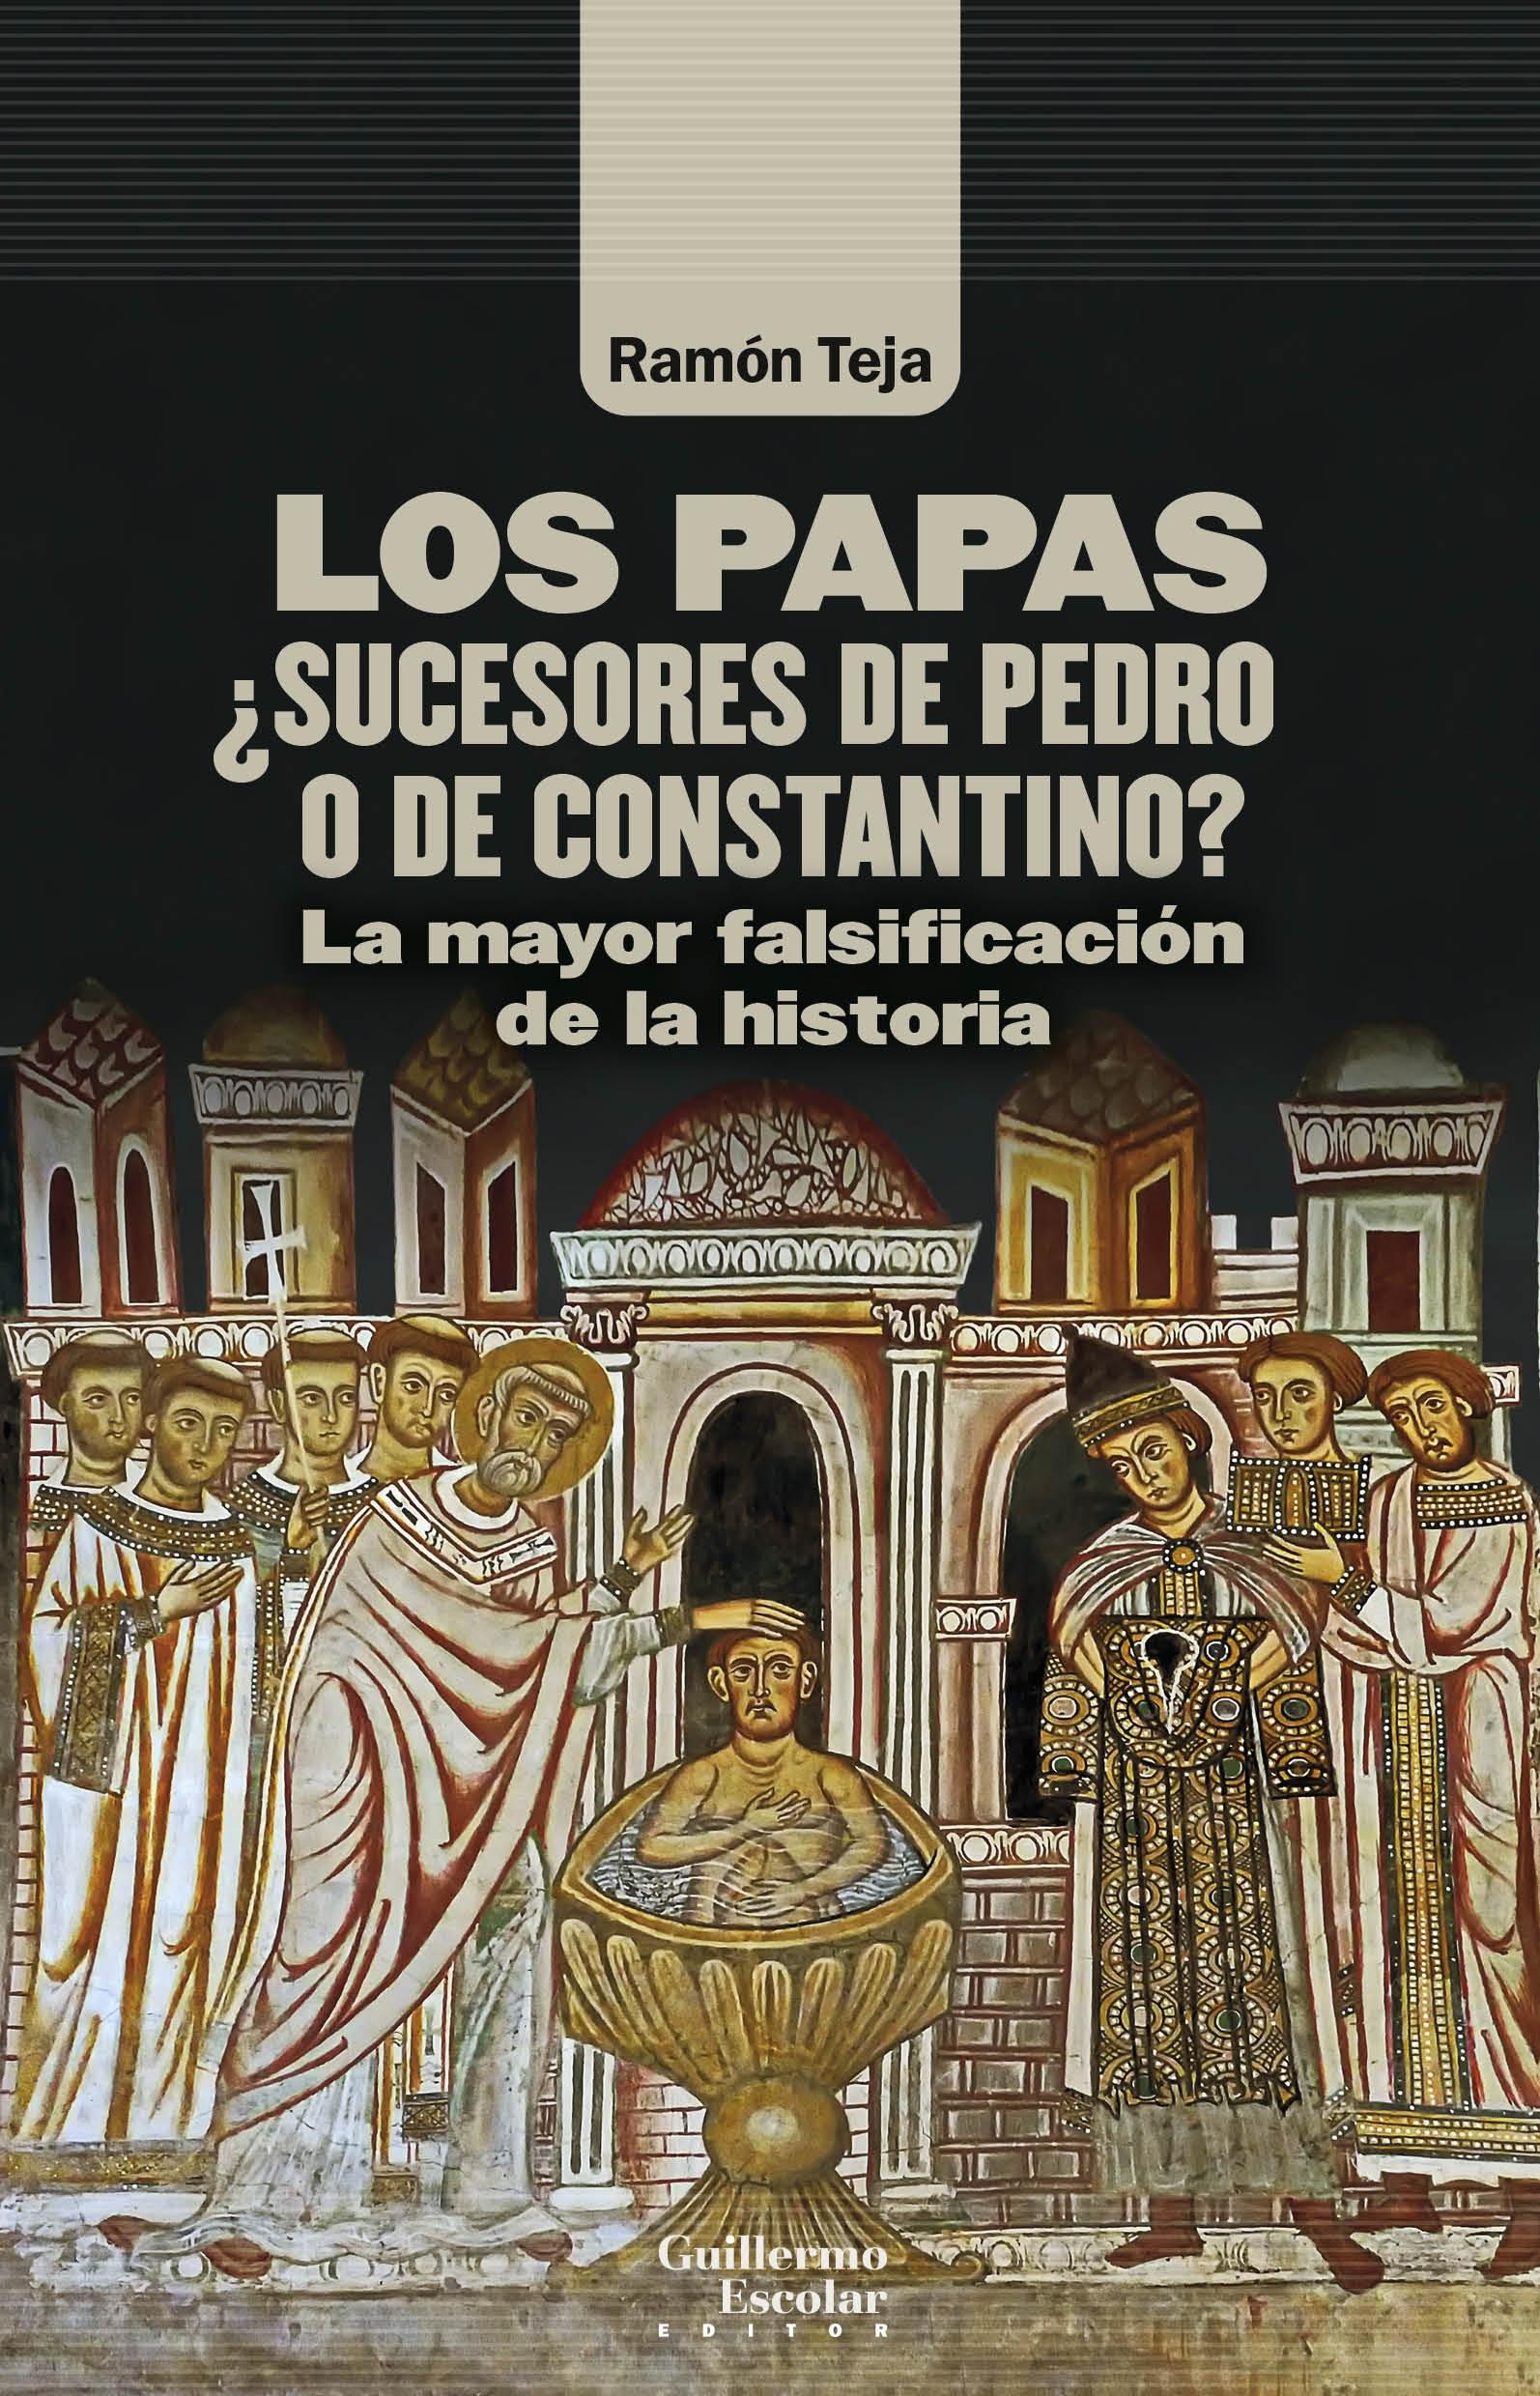 Los papas. ¿Sucesores de Pedro o de Constantino? "La mayor falsificación de la historia"